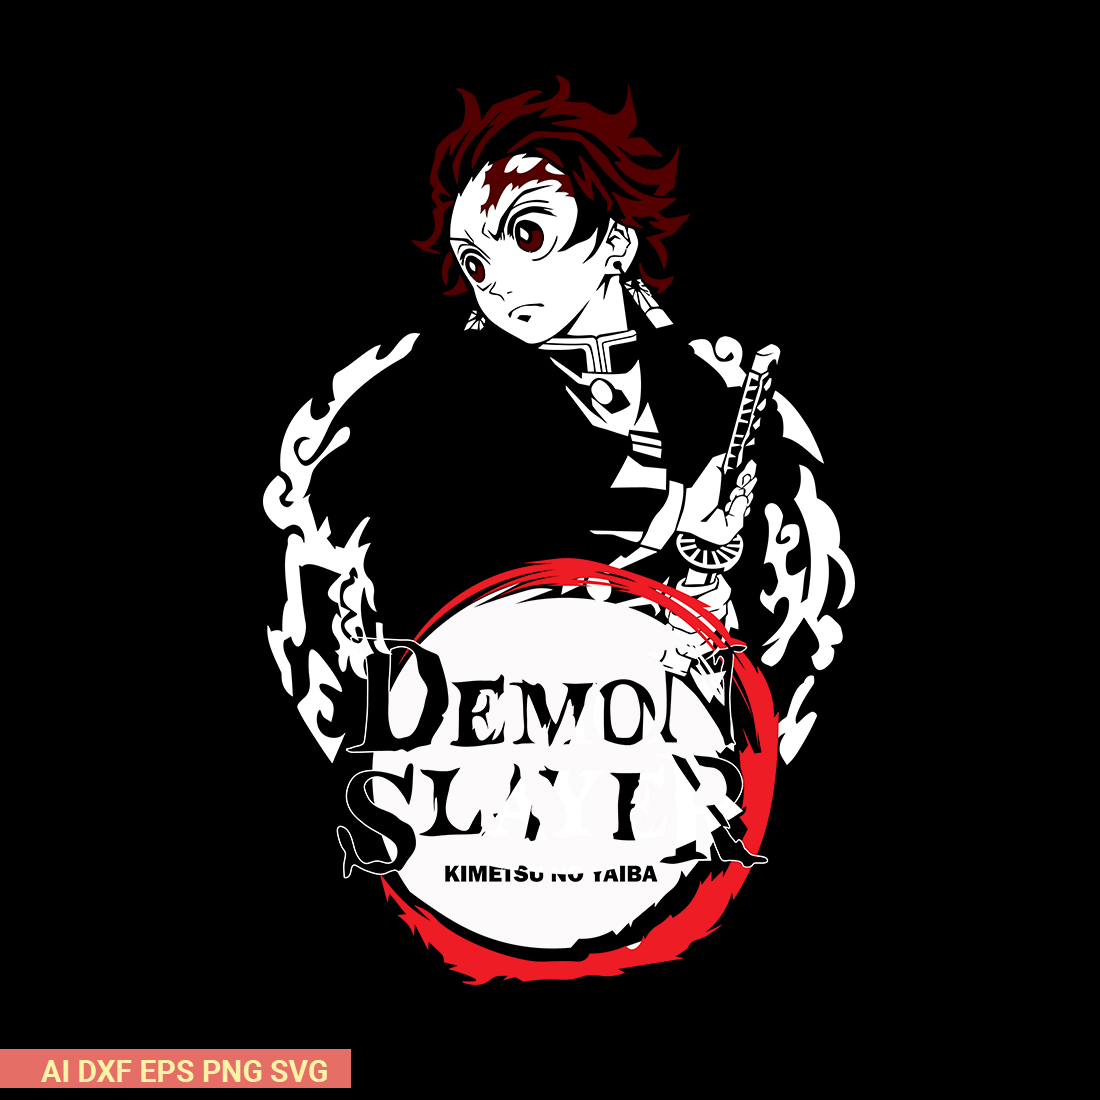 Demon Slayer Kimetsu no Yaiba tshirt design preview image.